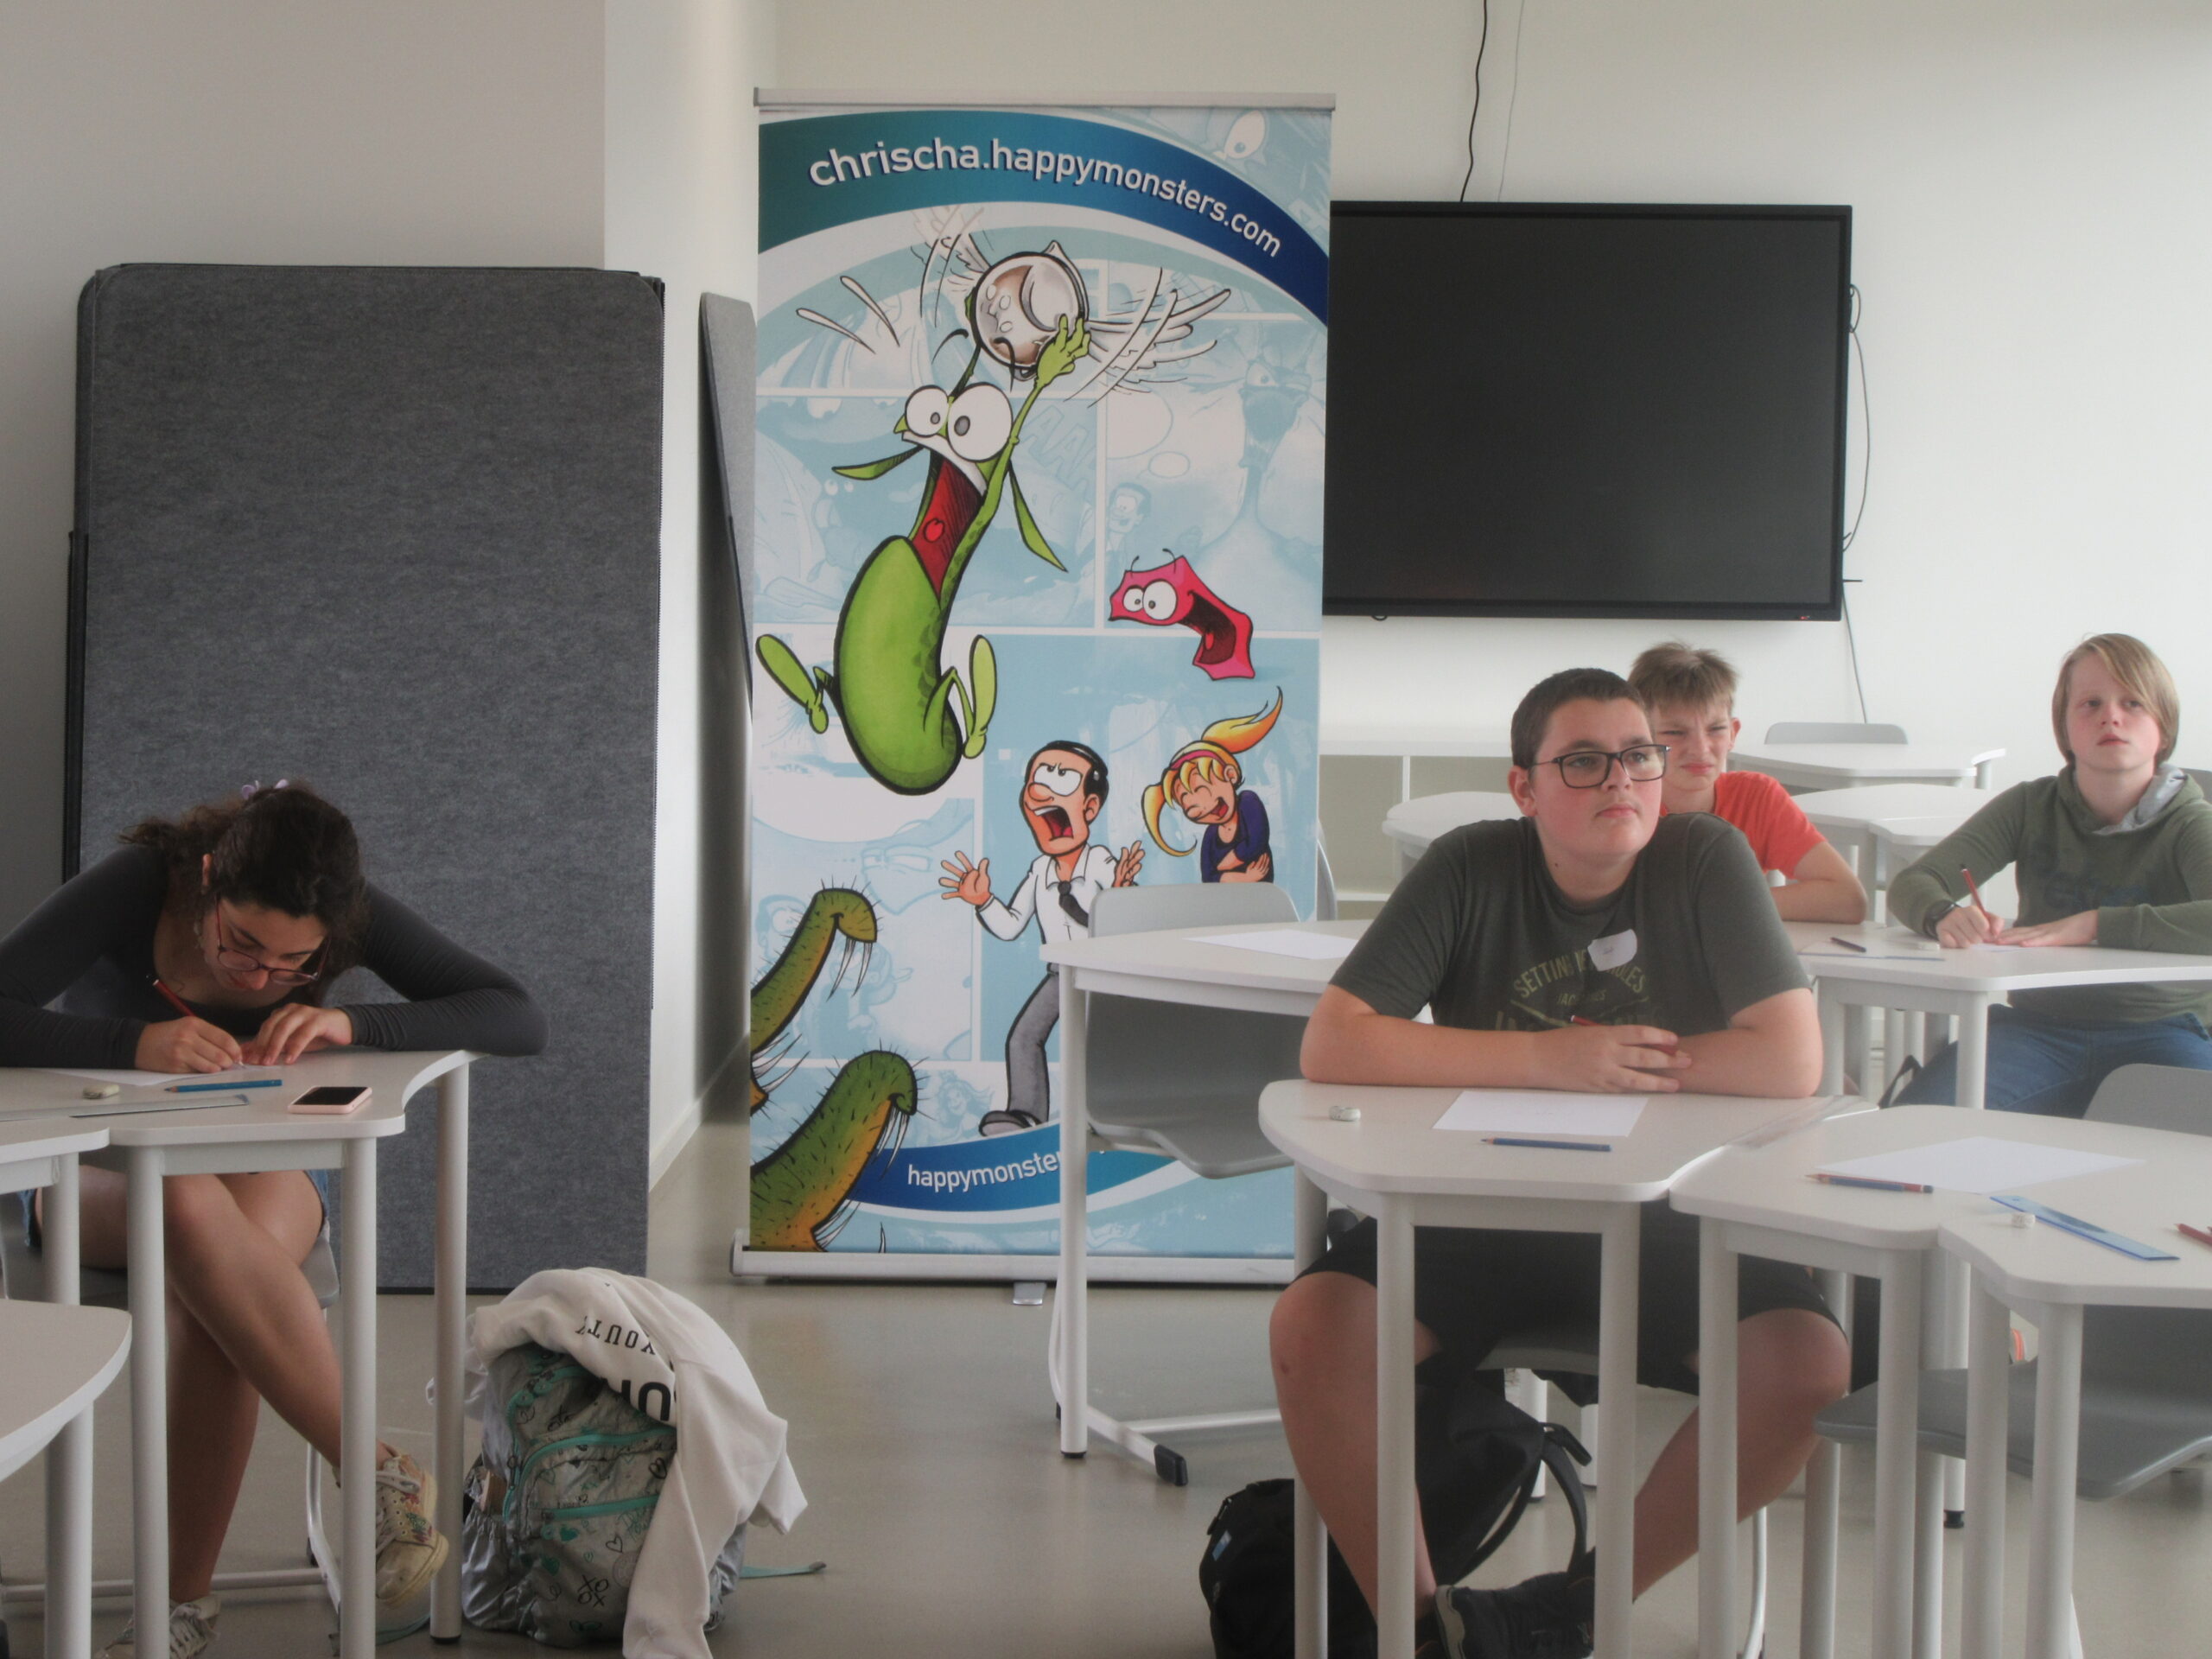 Fotoverslag: GO! atheneum Geraardsbergen organiseert voor de eerste keer een zomerschool aan de Papiermolenstraat